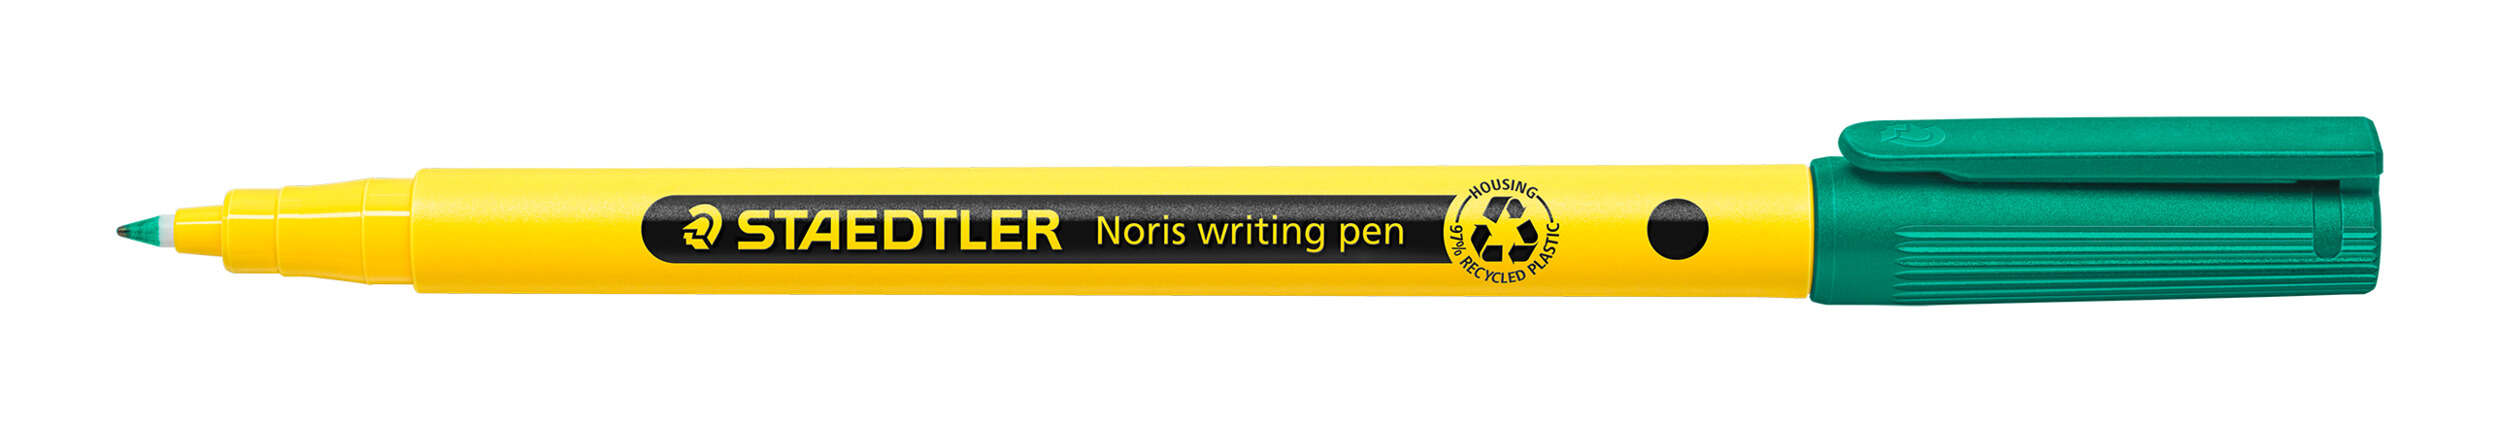 Staedtler 307 Noris Writing Pen Rotulador De Punta Fina - Trazo 0.6Mm Aprox - Tinta Base De Agua - Cuerpo Fabricado En Un 97% De Plastico Reciclado - Color Verde